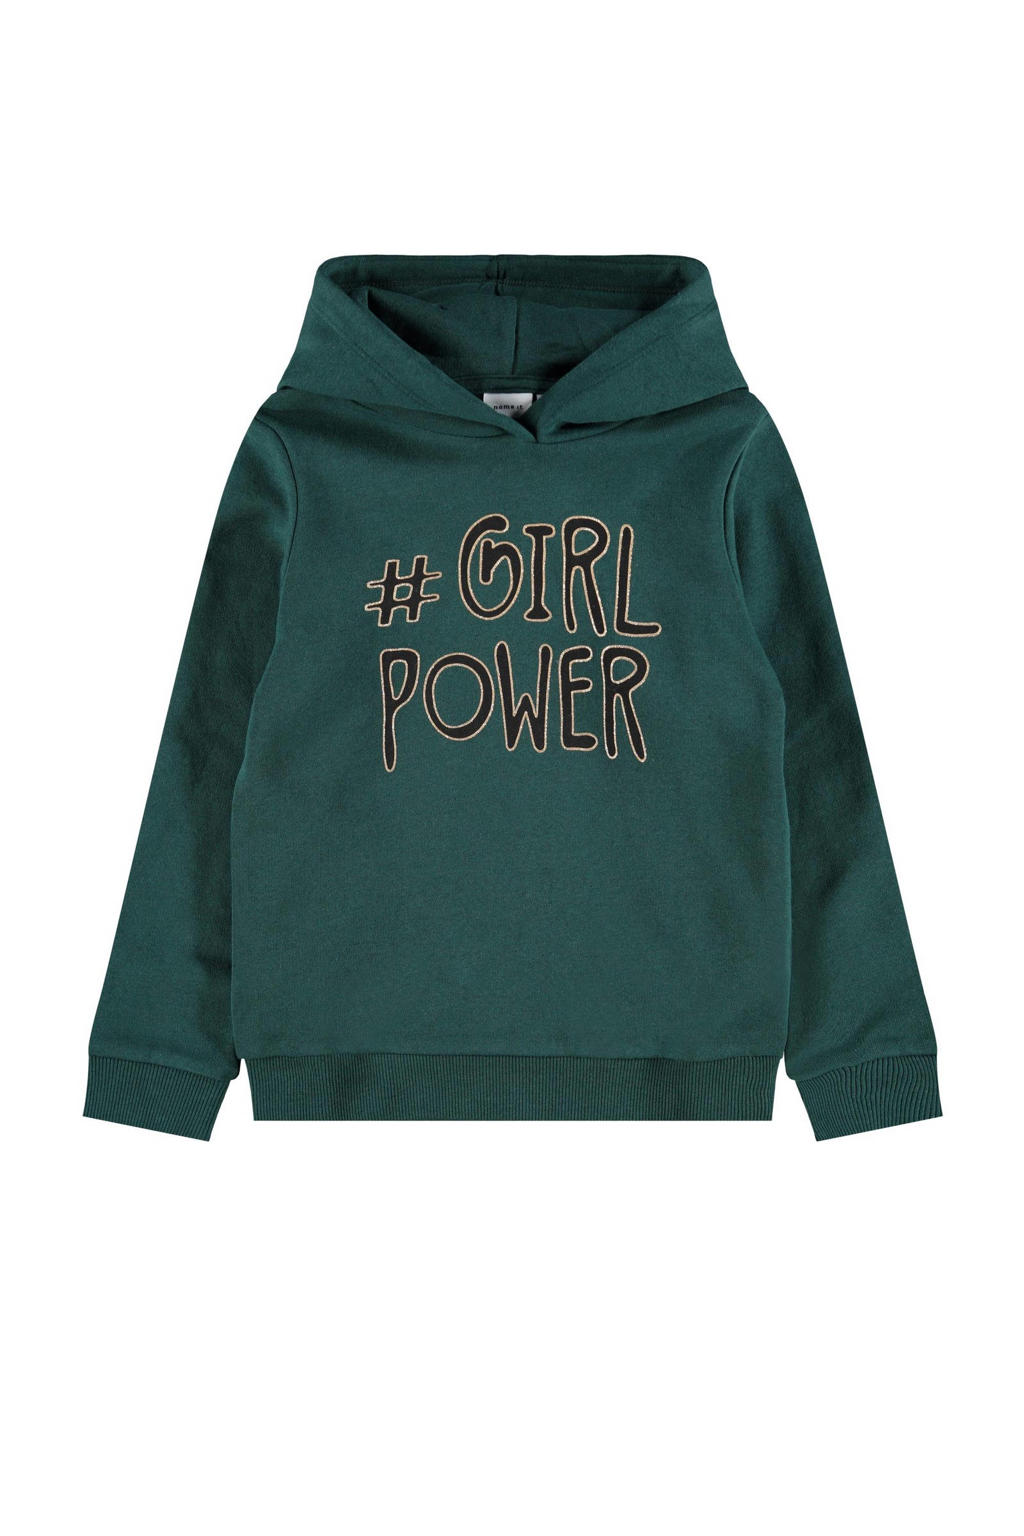 Groene meisjes NAME IT hoodie van sweat materiaal met tekst print, lange mouwen en capuchon